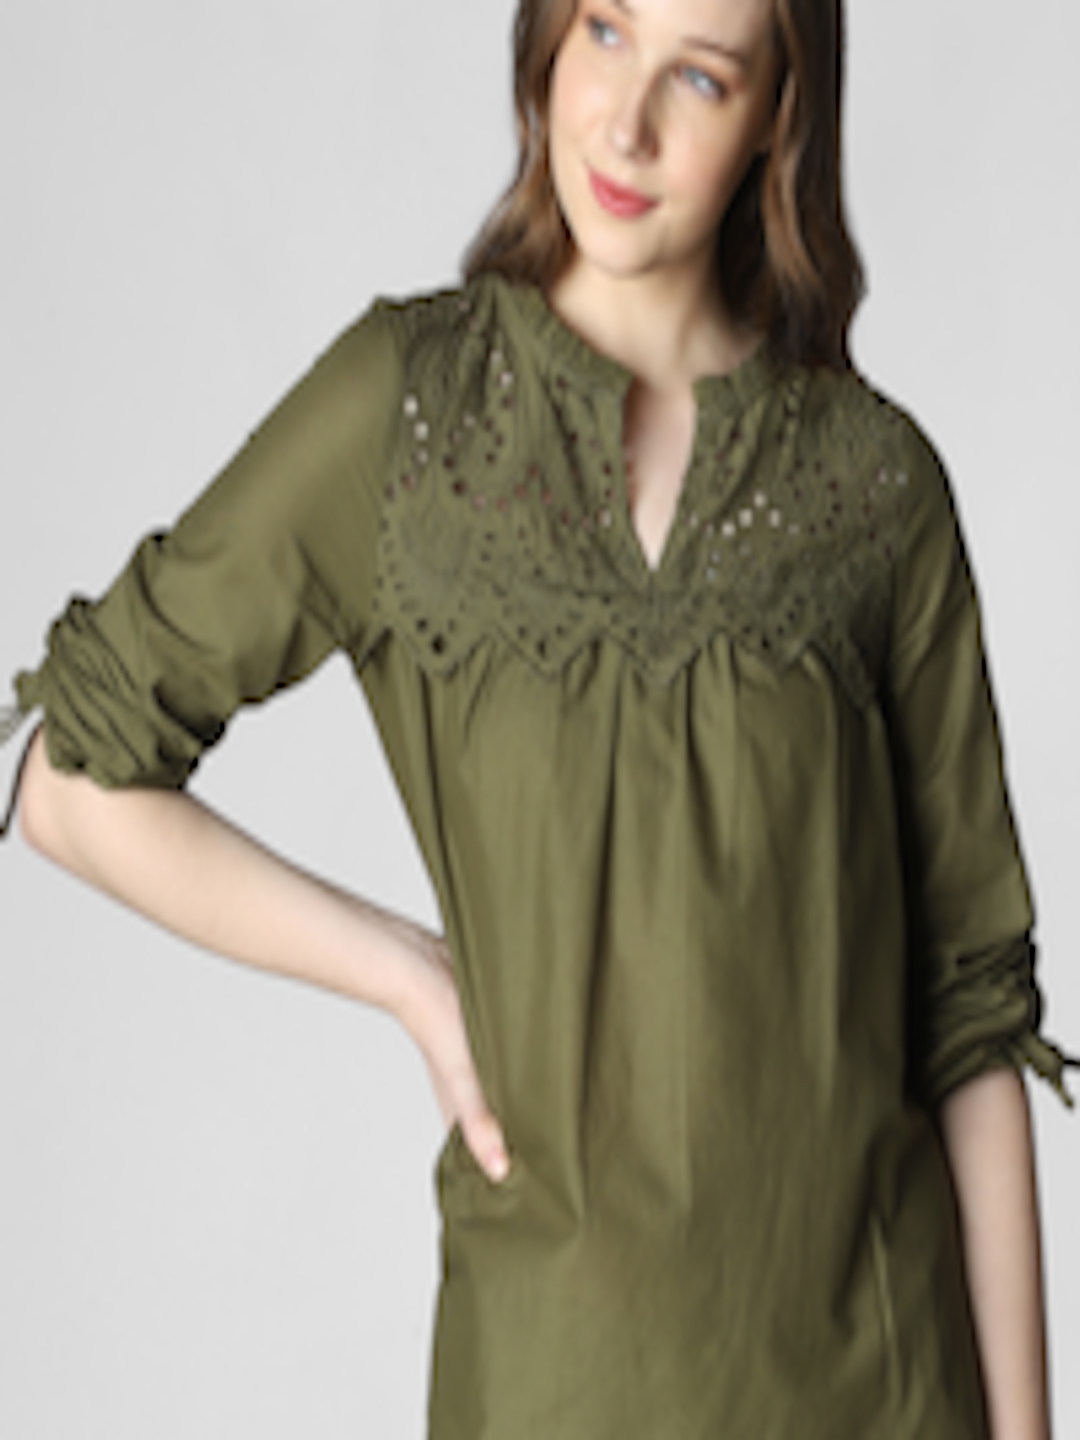 Buy Vero Moda Women Olive Green Solid Top - Tops for Women 10275155 ...